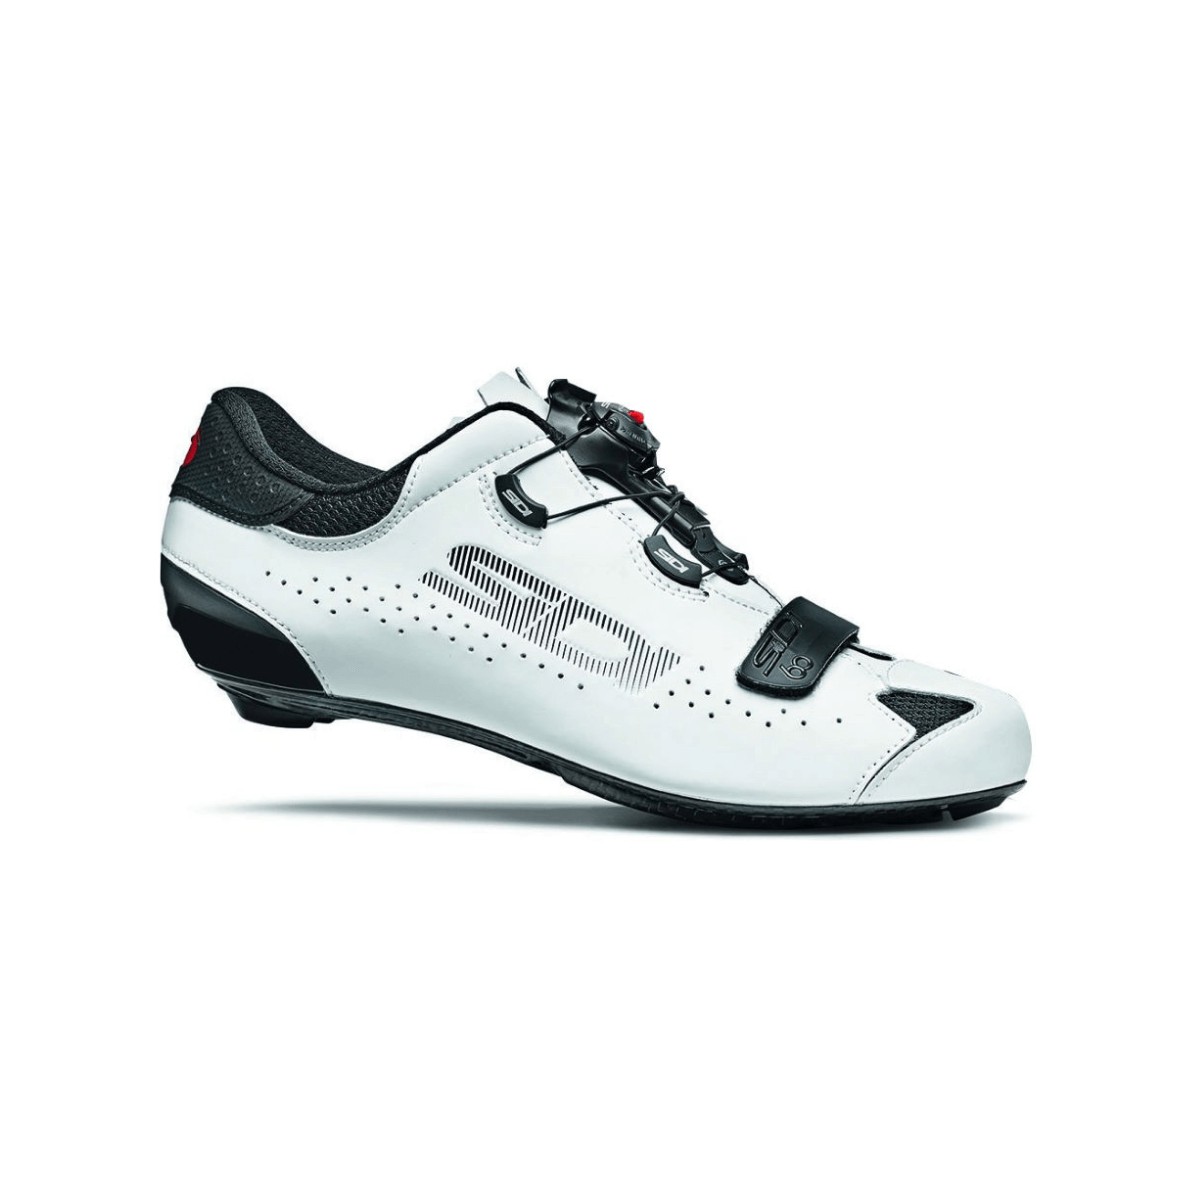 Sidi Sixty Schuhe Schwarz Weiß, Größe 44 - EUR